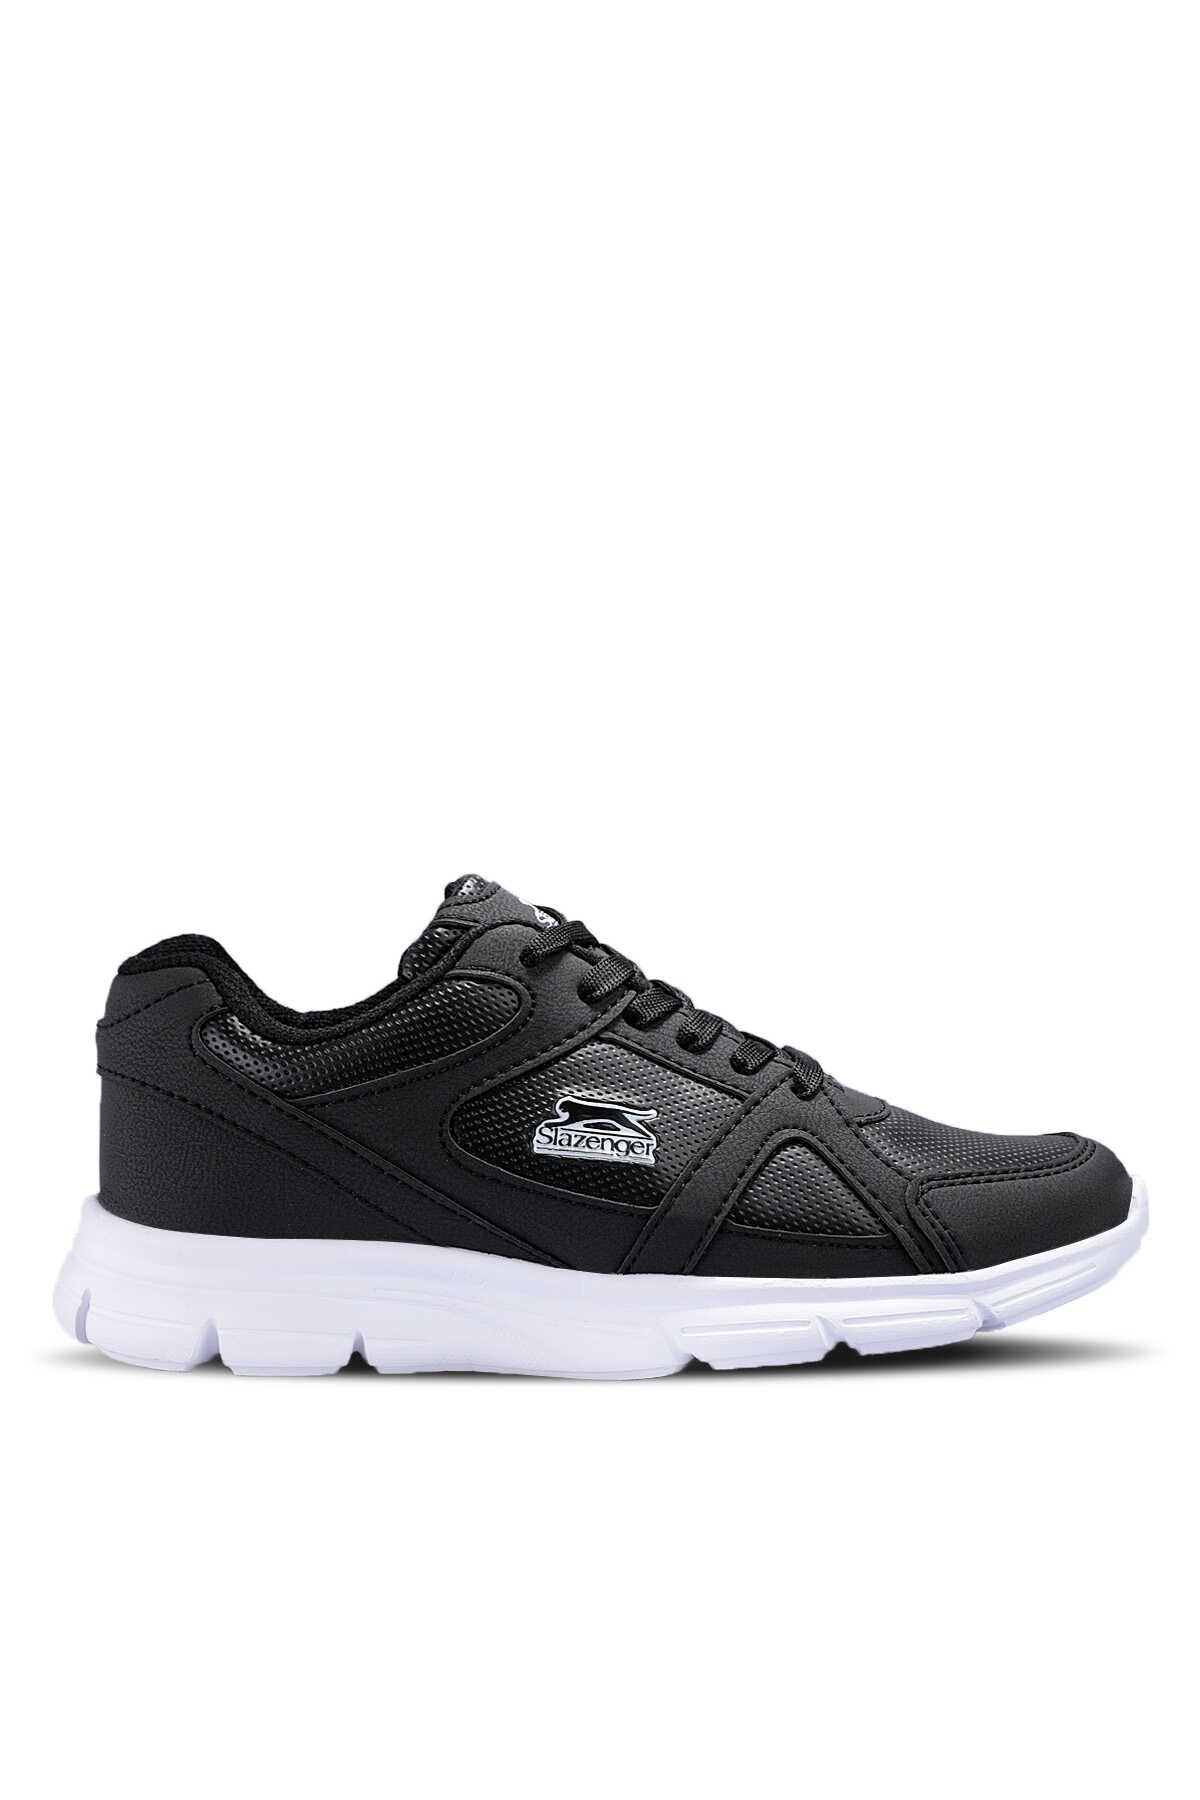 Slazenger - PERA Sneaker Erkek Ayakkabı Siyah / Beyaz